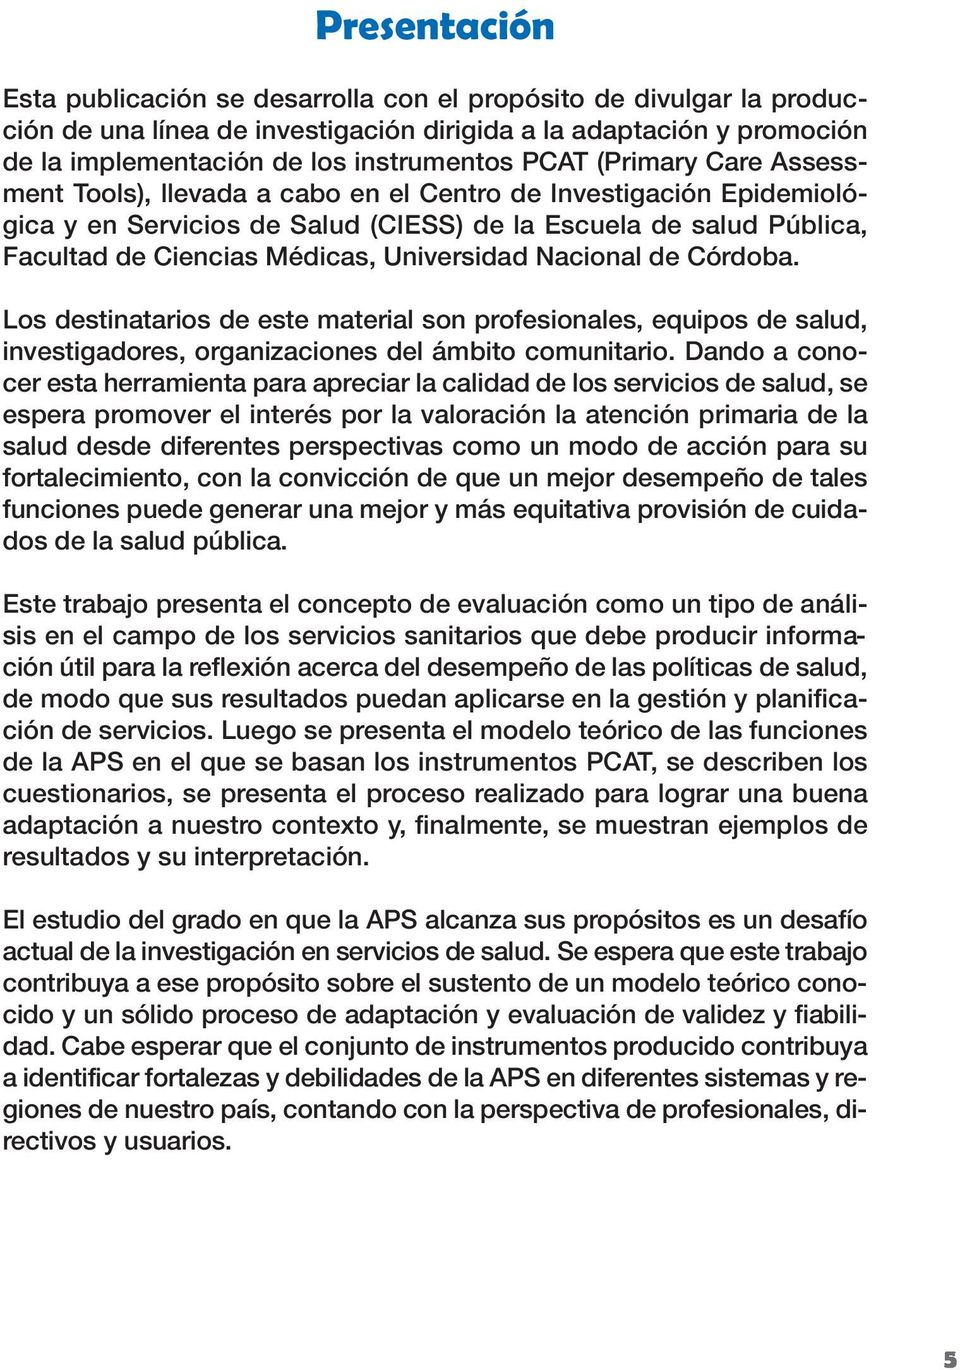 Nacional de Córdoba. Los destinatarios de este material son profesionales, equipos de salud, investigadores, organizaciones del ámbito comunitario.